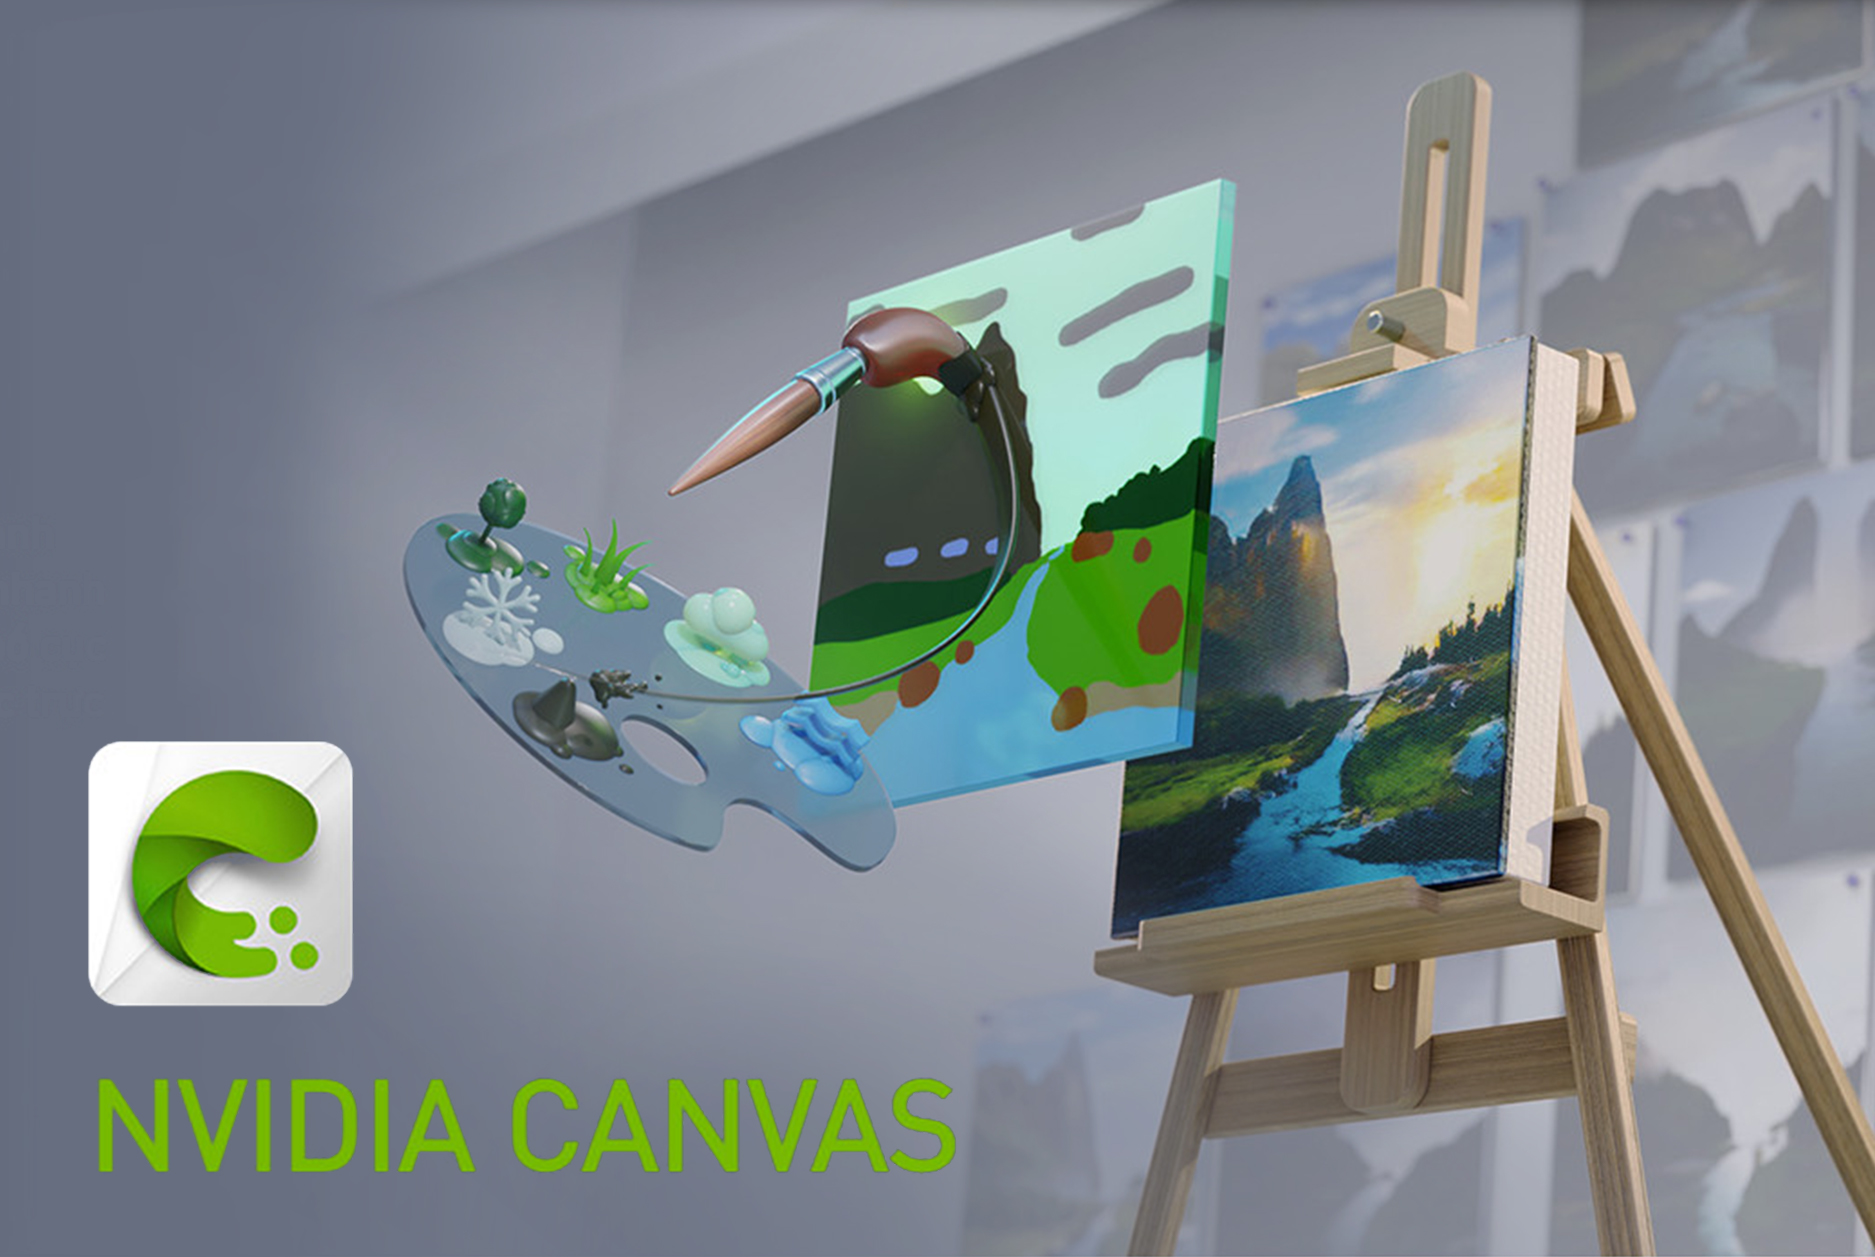 Nvidia ra mắt ứng dụng NVIDIA CANVAS: Biến các nét vẽ đơn giản thành các tác phẩm nghệ thuật với AI